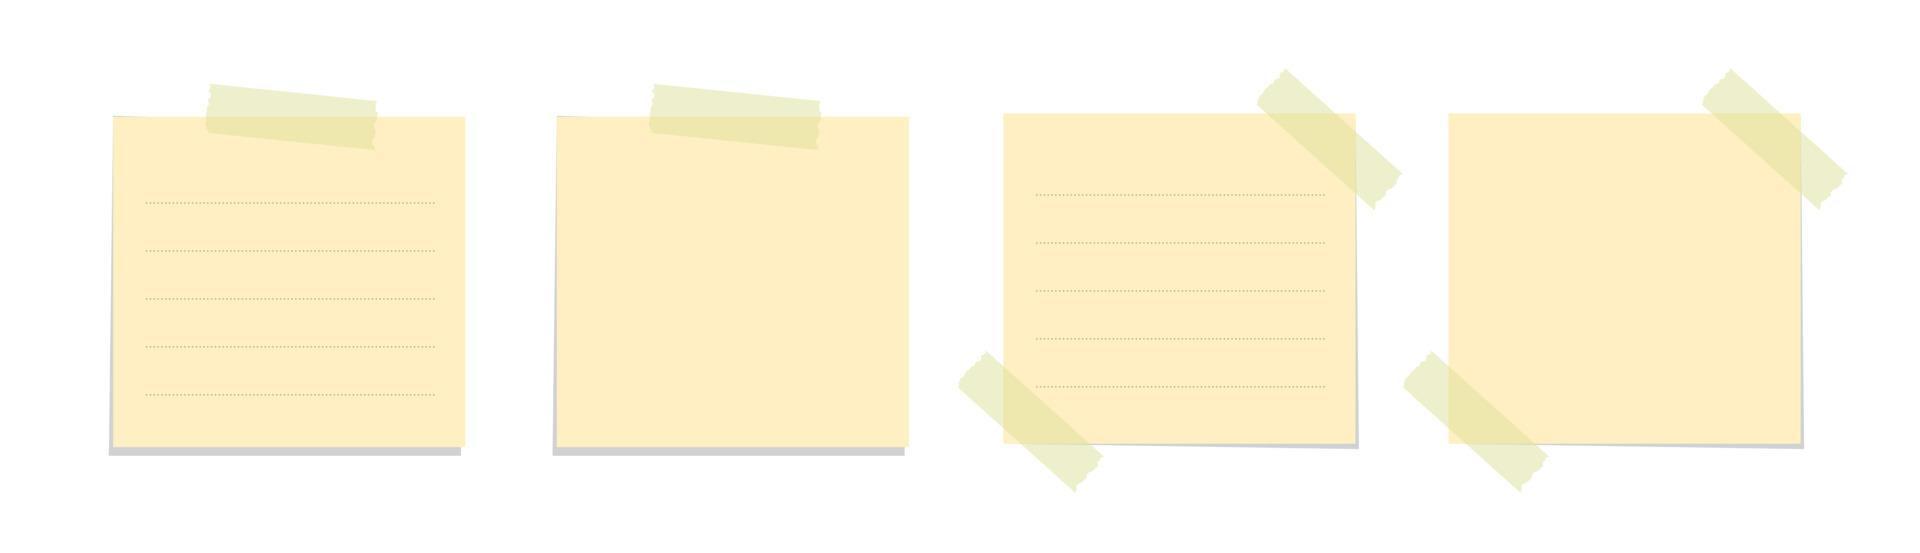 geel kleverig Notitie vector illustratie set. geplakt plein kantoor memo papier sjabloon model.